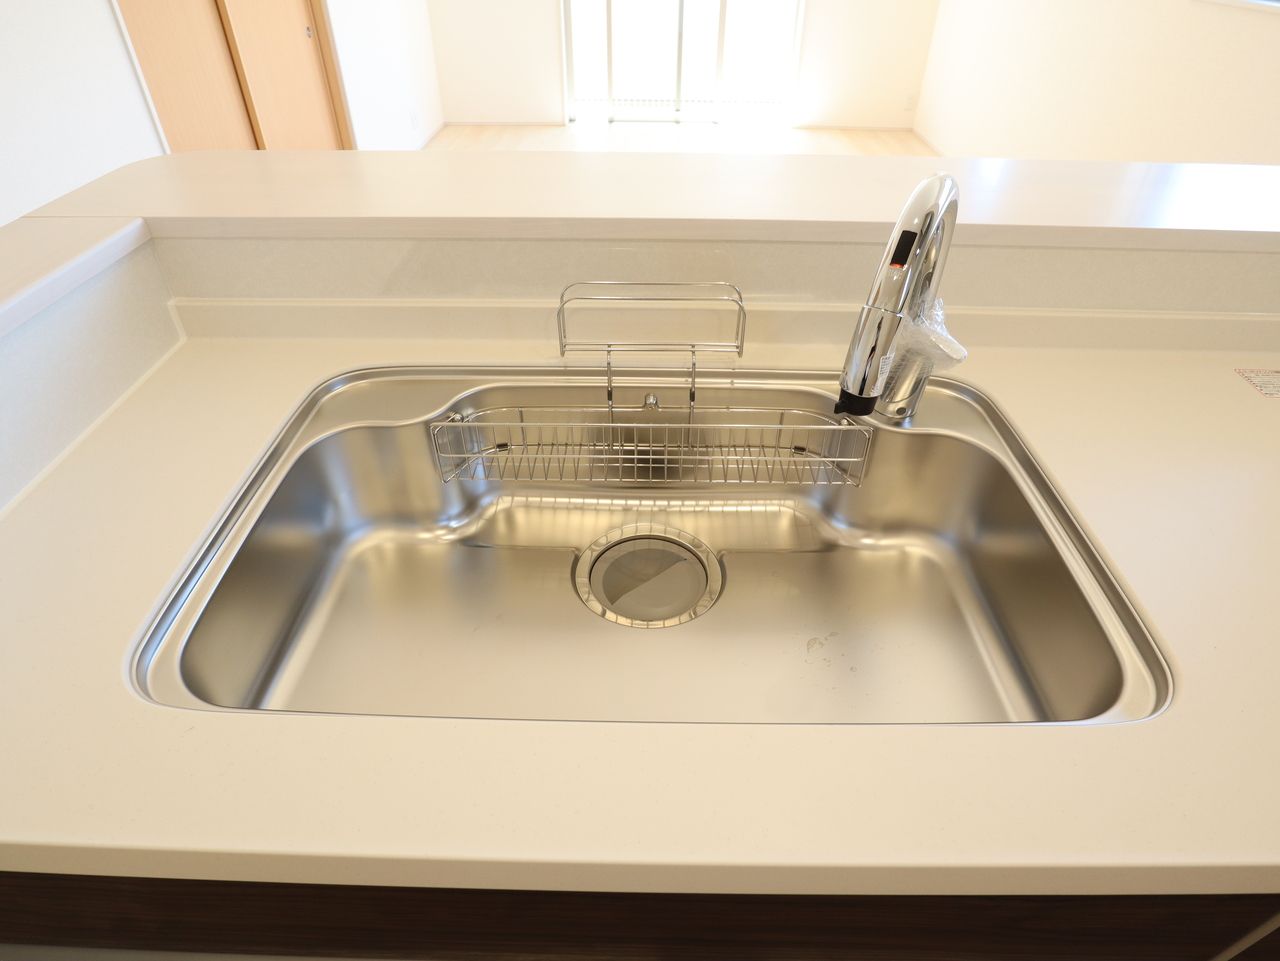 水栓から出る水がシンクに当たる音を抑える制振構造。 ステンレスは非常に固いことから衝撃を受けても変形しにくいのが特徴です。汚れが付着しても軽く拭くだけで綺麗に除去出来るのでキッチンを清潔に保つのに最適です。